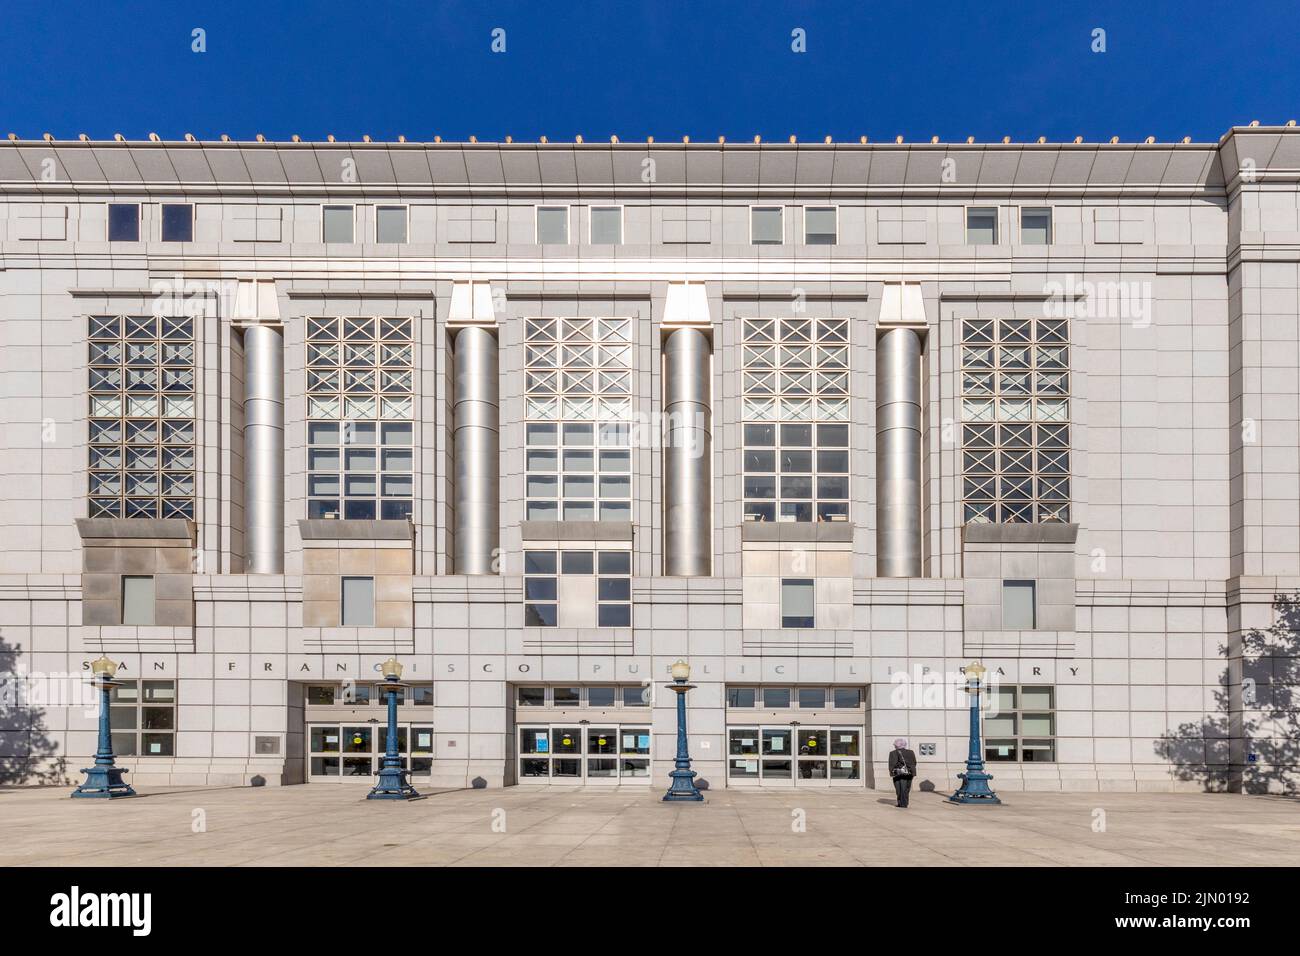 San Francisco, USA - May 20 2022: facade of San Francisco public library downtown San Francisco. Stock Photo